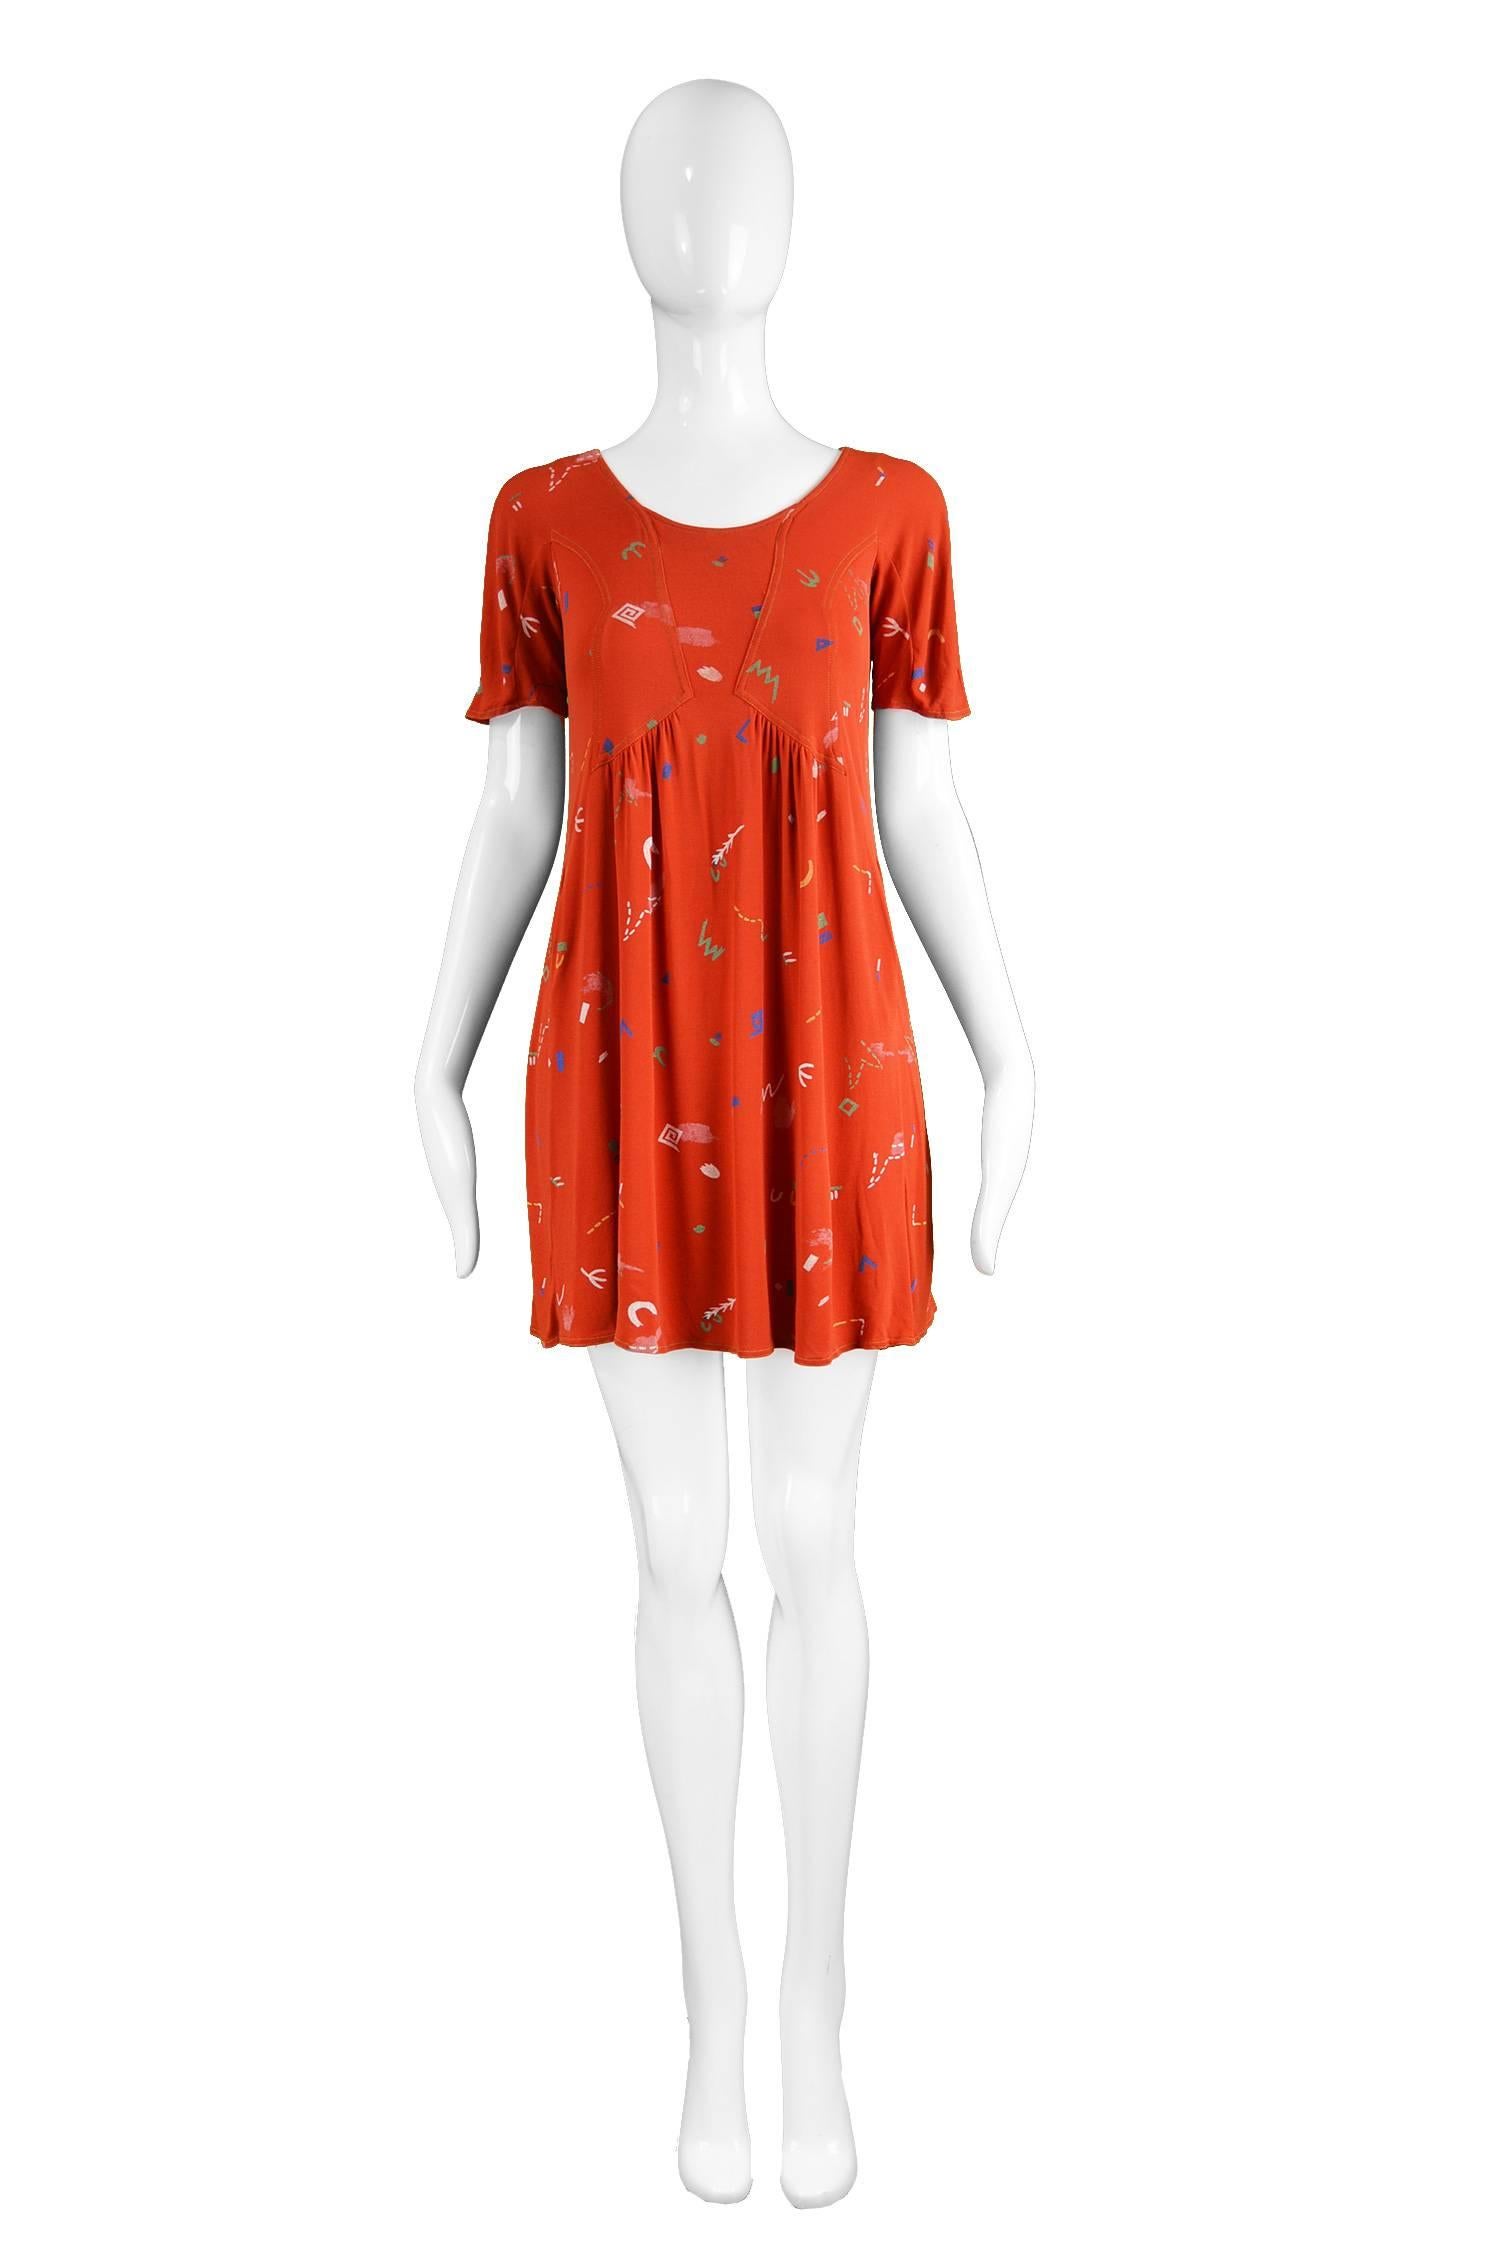 Jean Muir 1976 Vintage Red Atomic Print Matte Jersey Mini Dress

Estimated Size: UK 10/ US 6/ EU 38. Please check measurements.
Bust - 34” / 86cm
Waist - 34” / 86cm 
Hips - 42” / 106cm
Length (Shoulder to Hem) - 30” / 76cm

Condition: Excellent